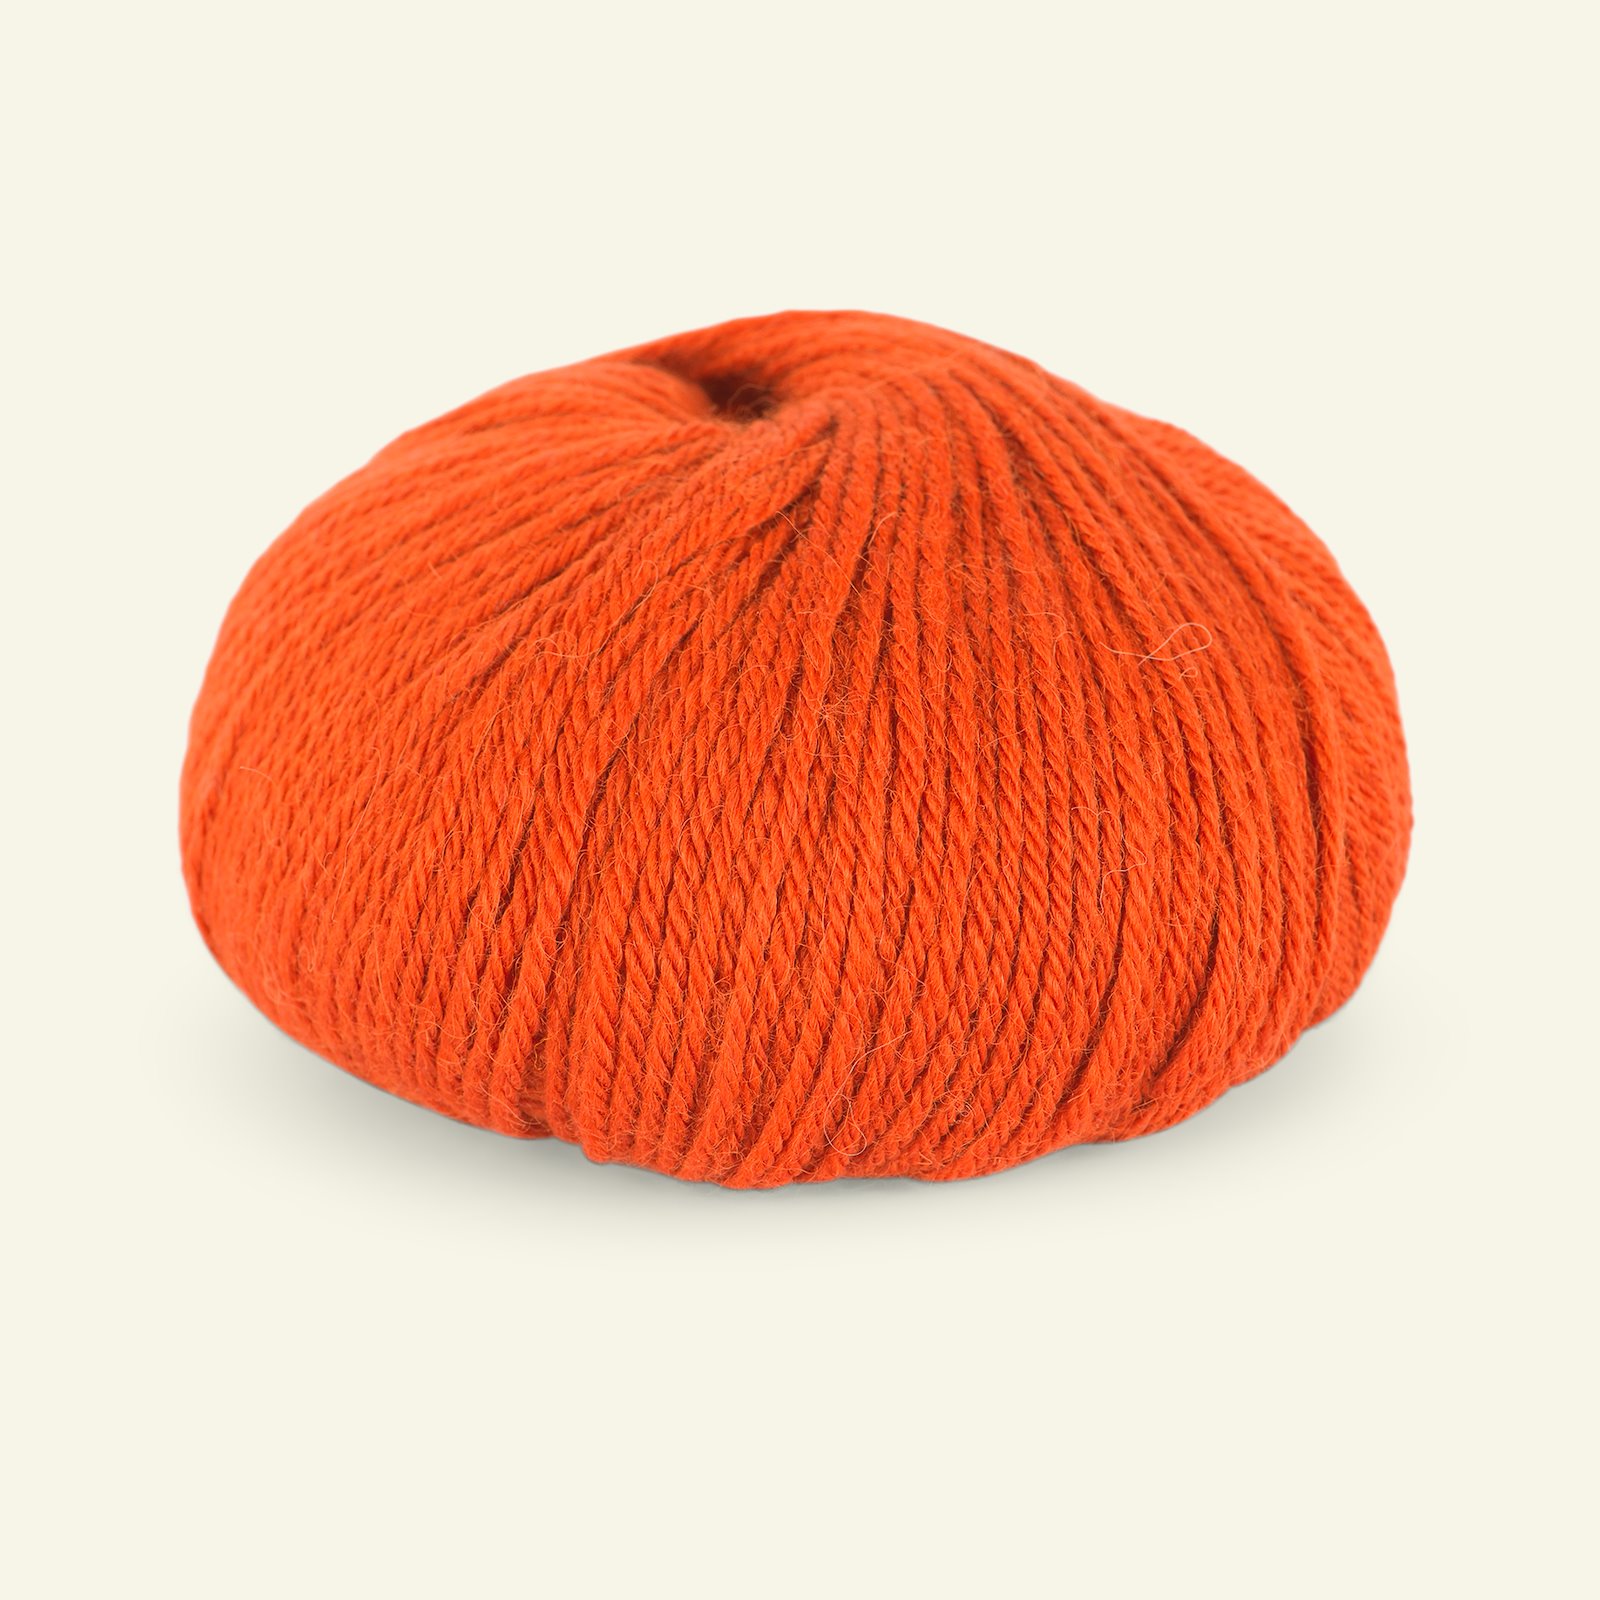 Du Store Alpakka, alpaca merino mixed yarn "Sterk", orange (907) 90000699_pack_b